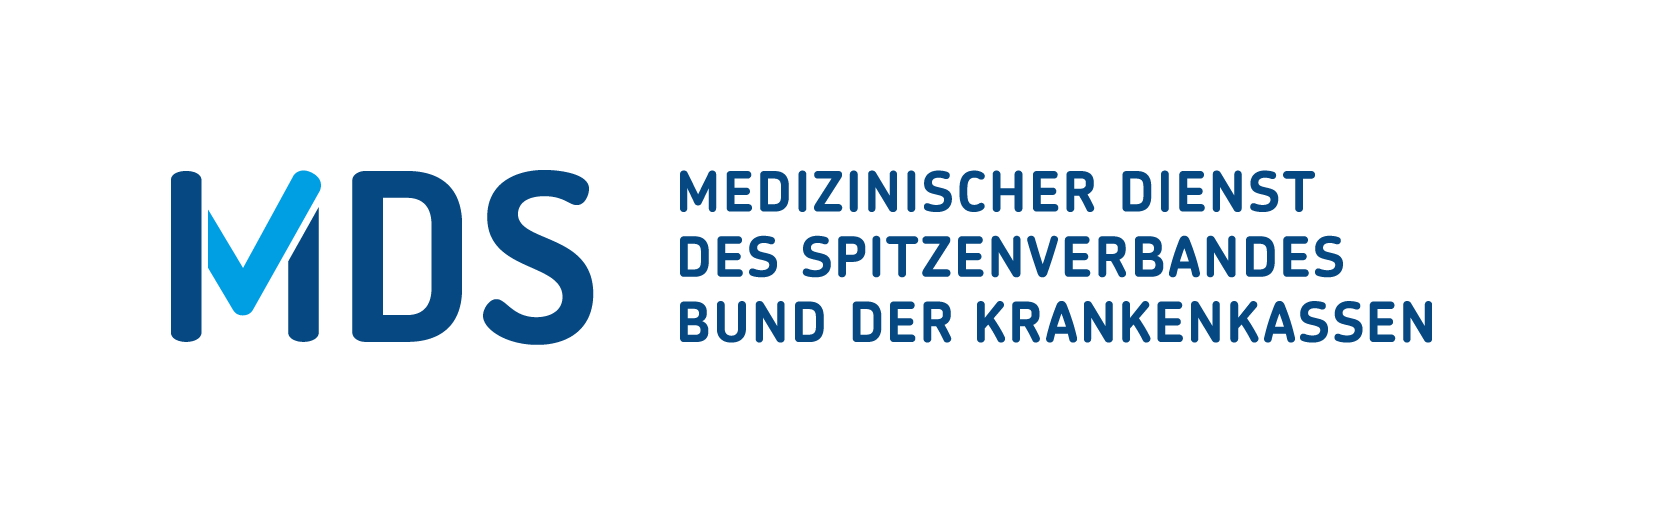 Deutsche-Politik-News.de | Medizinischer Dienst des GKV-Spitzenverbandes (MDS)